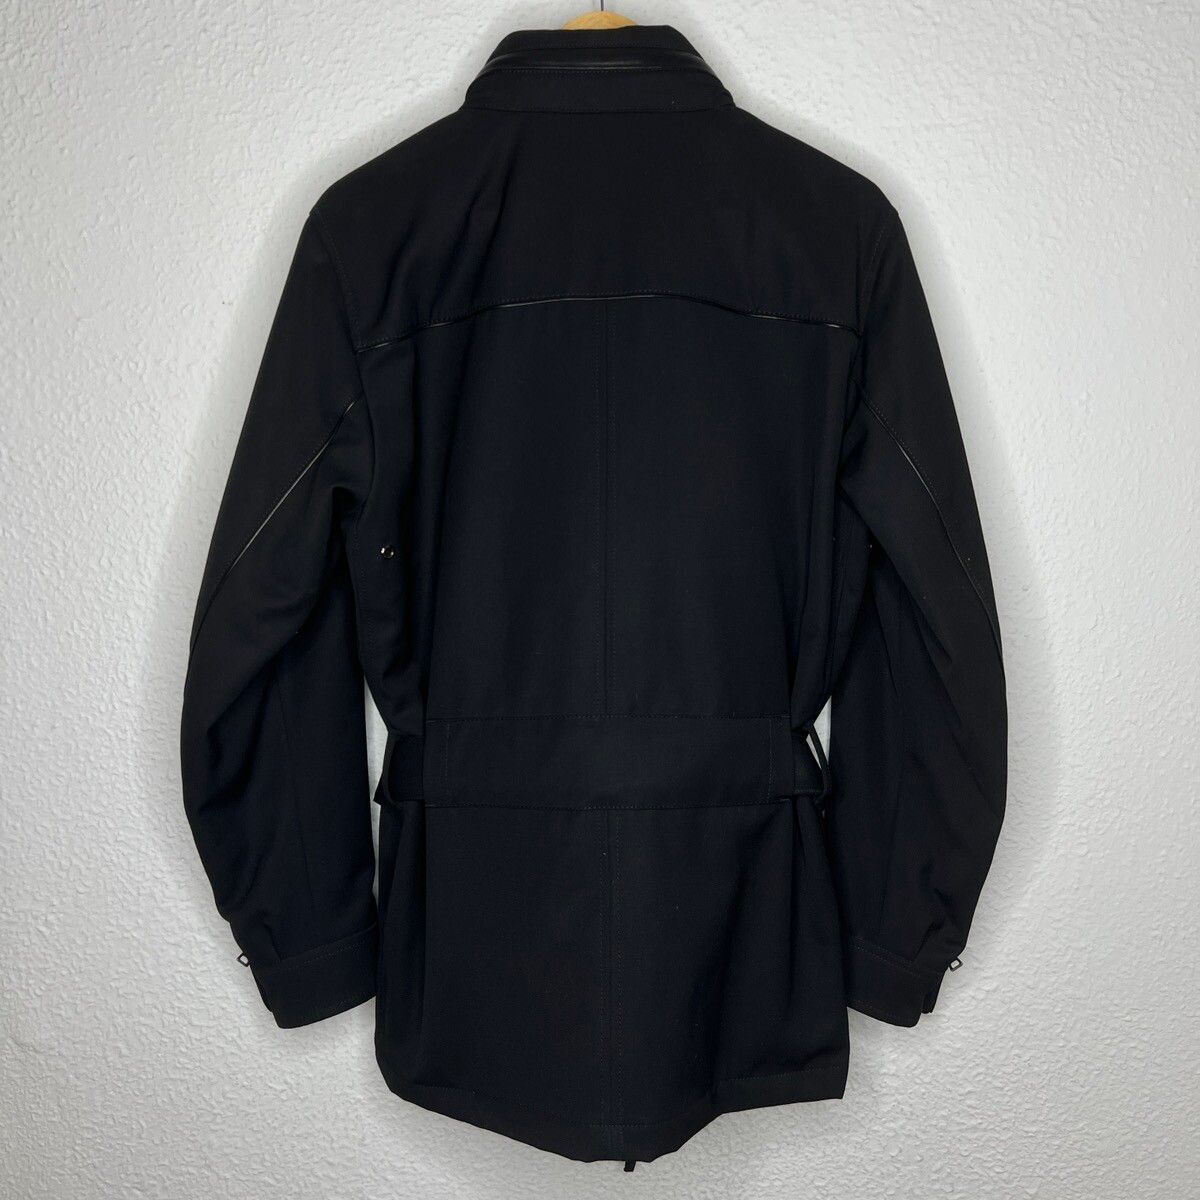 Prada Prada Milano Military Jacket Belted Coat Black Wool Designer Size US M / EU 48-50 / 2 - 13 Thumbnail